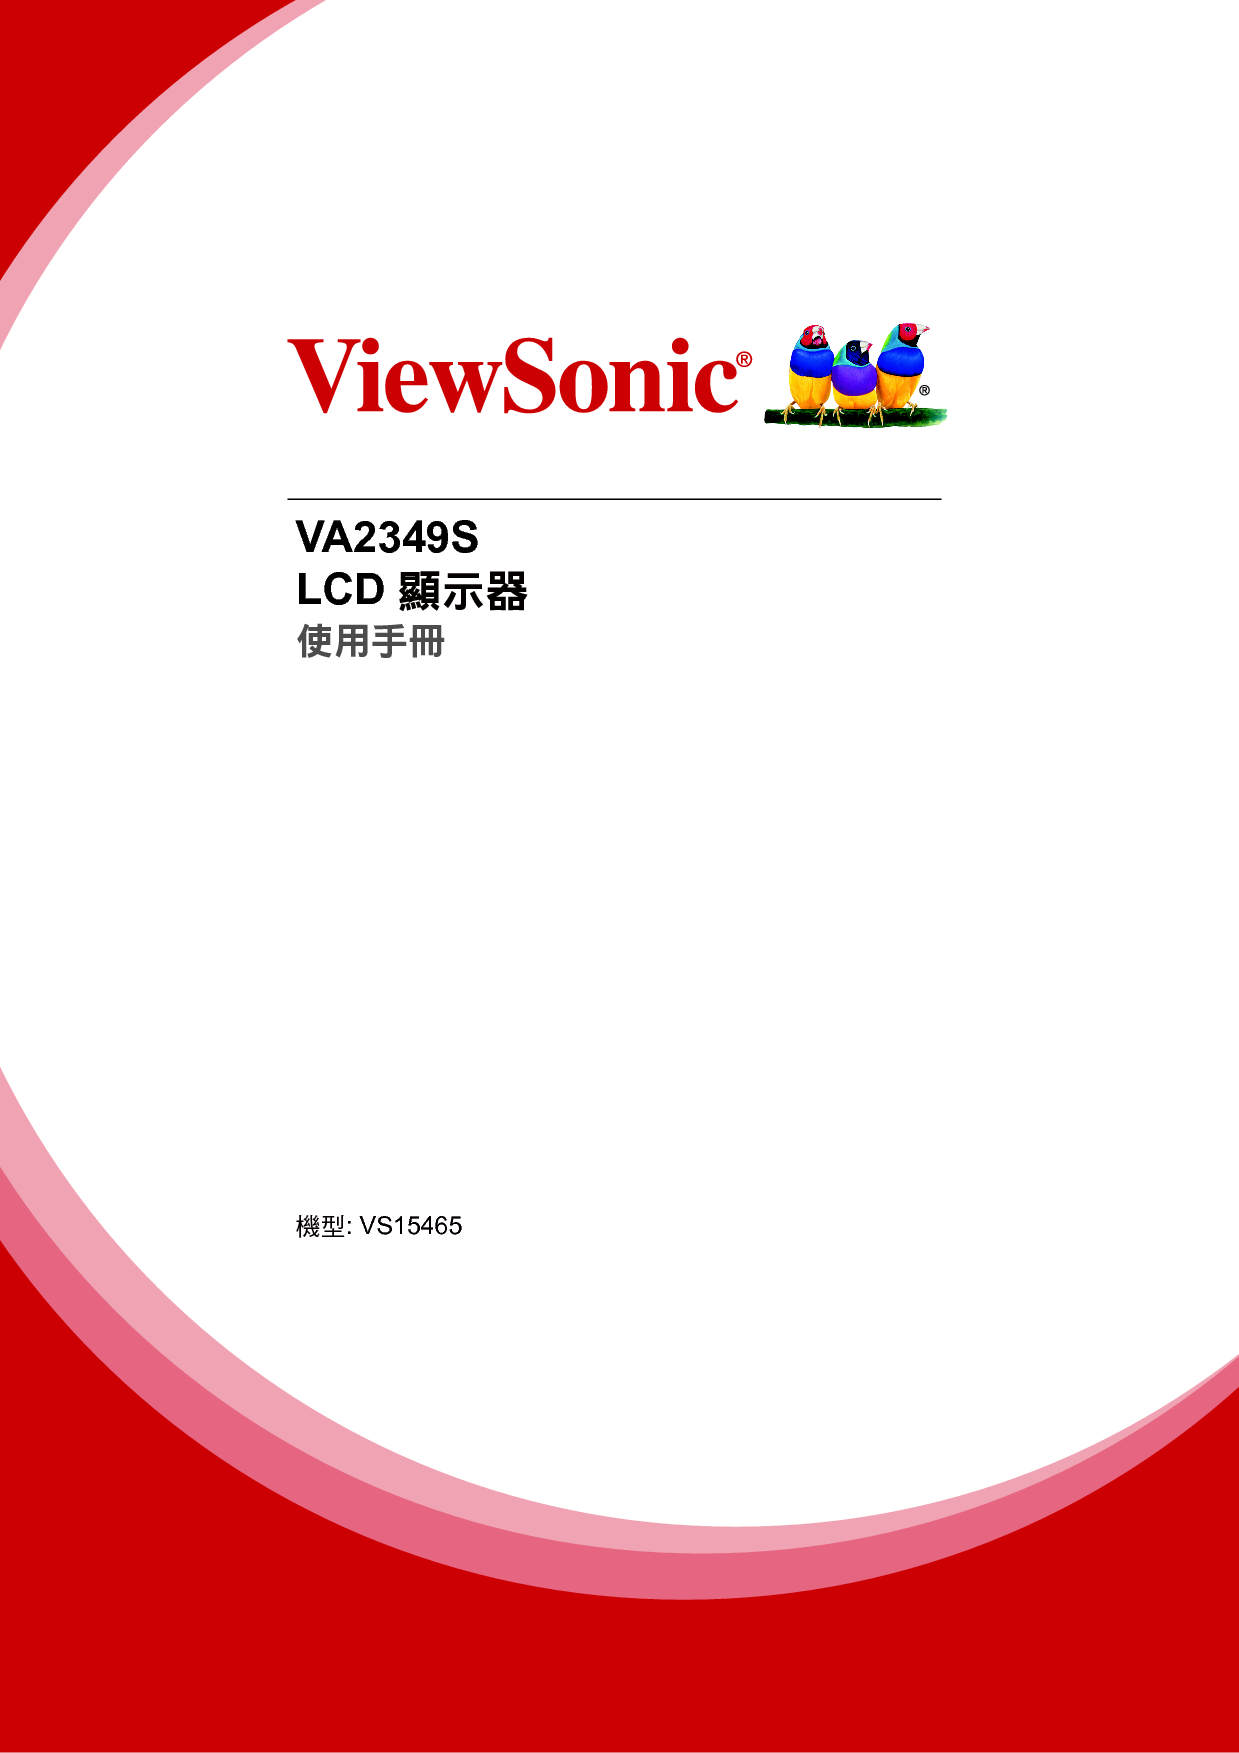 优派 ViewSonic VA2349s 繁体 使用手册 封面